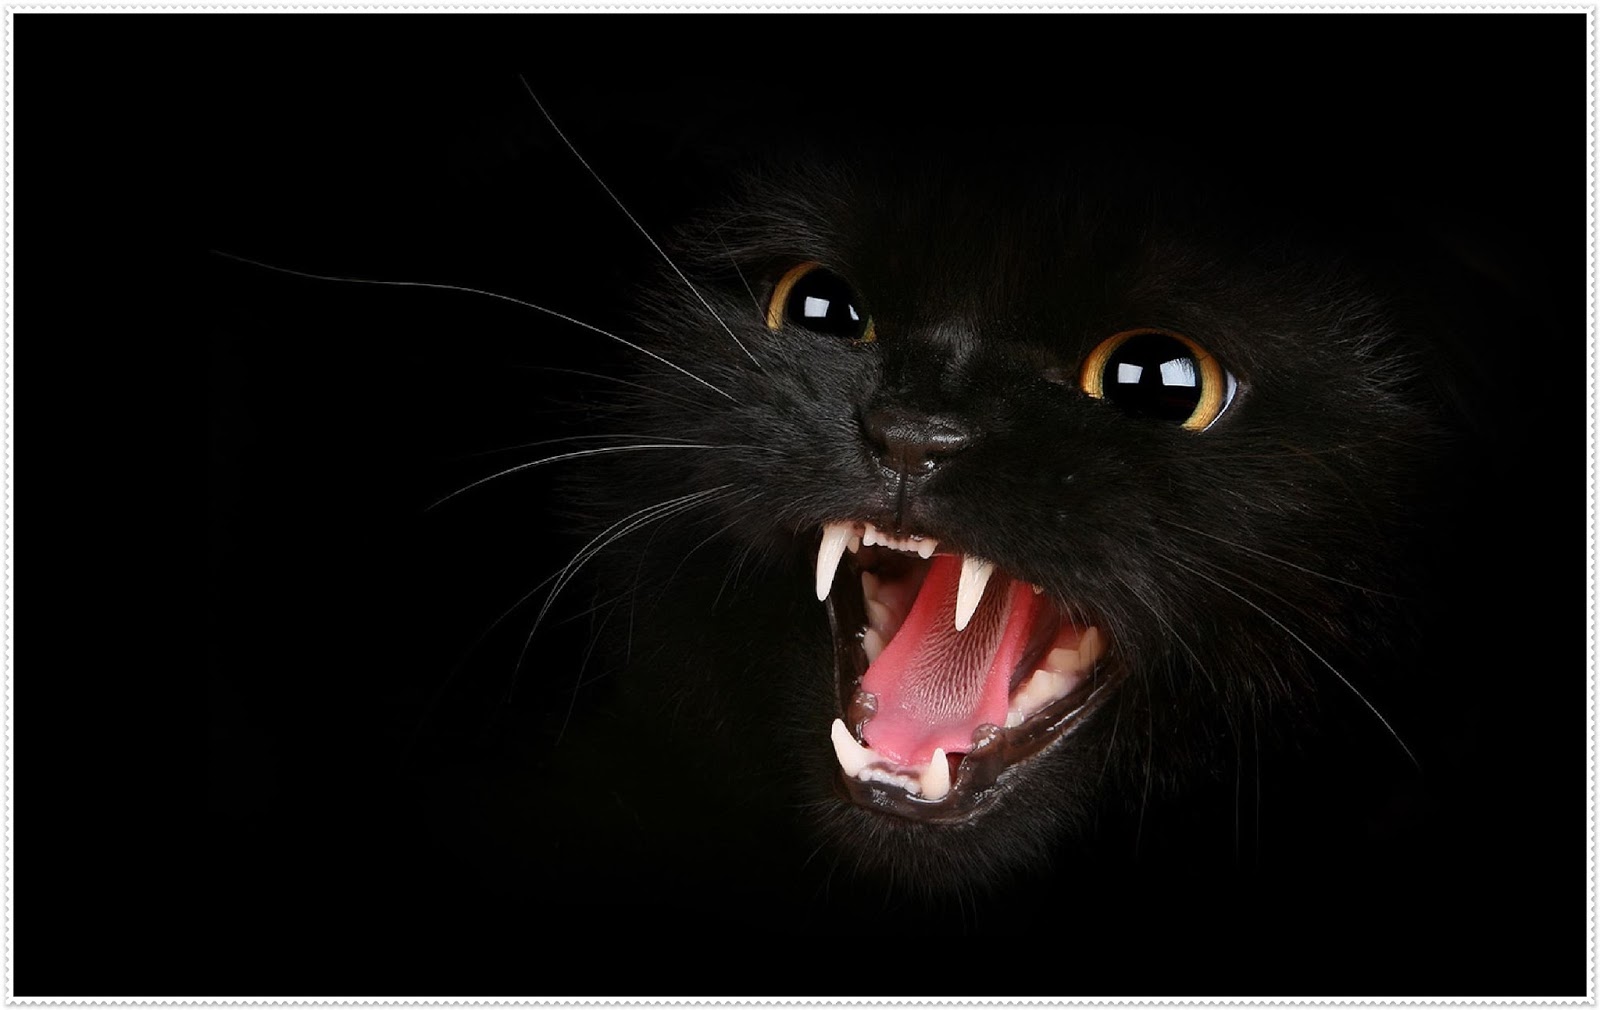 wallpaper hitam putih,felidae,black cat,cat,whiskers,facial expression